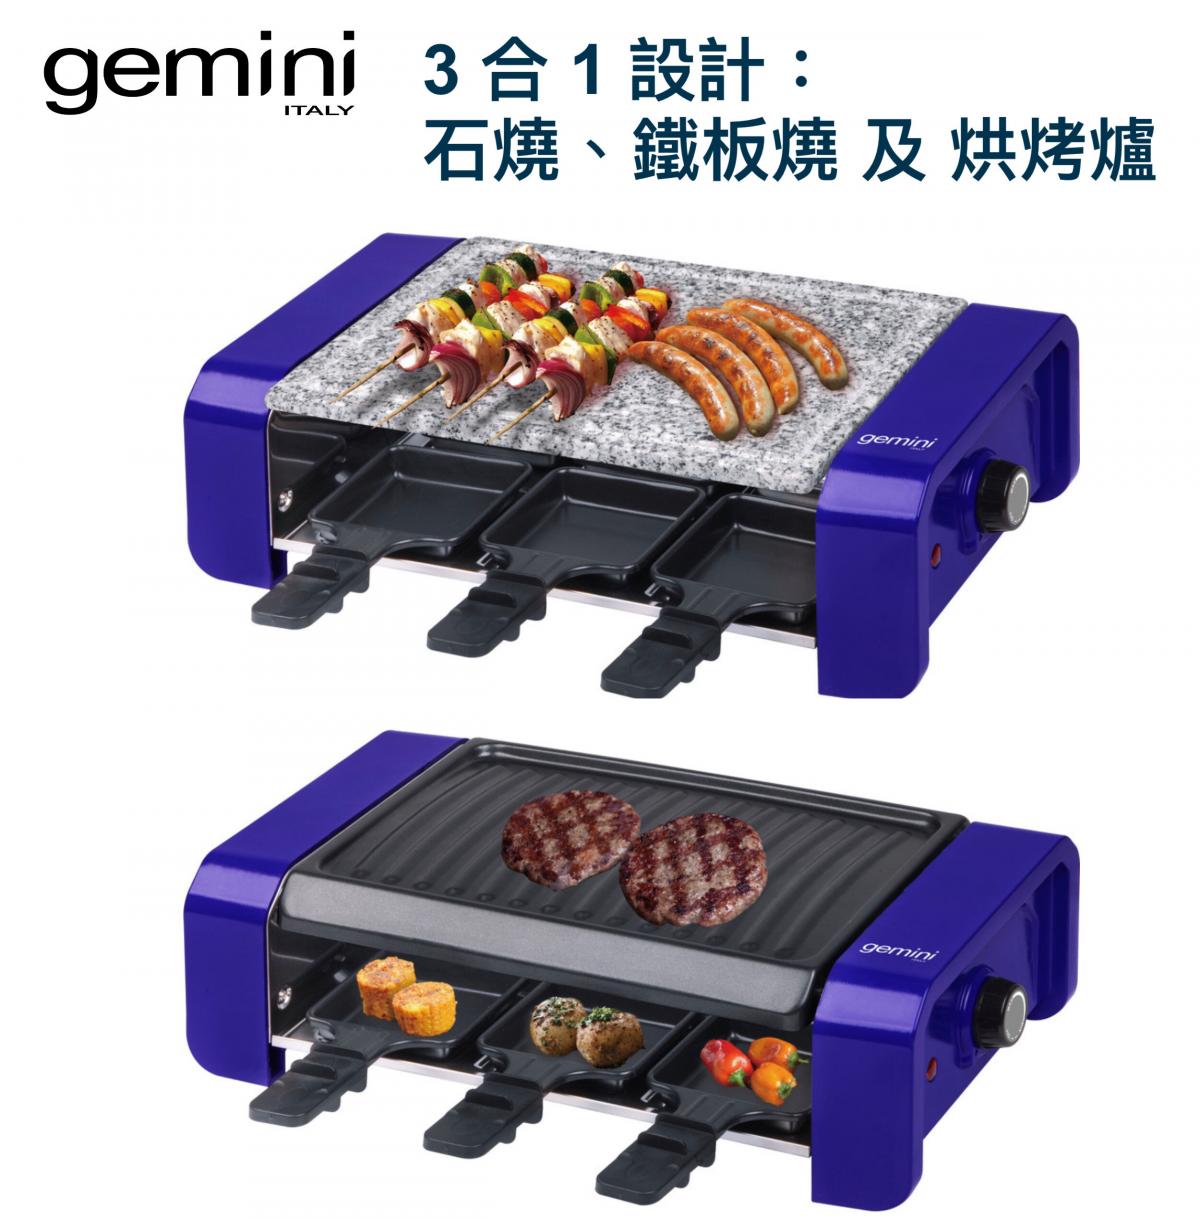 3合1電子BBQ燒烤爐 GBG900V